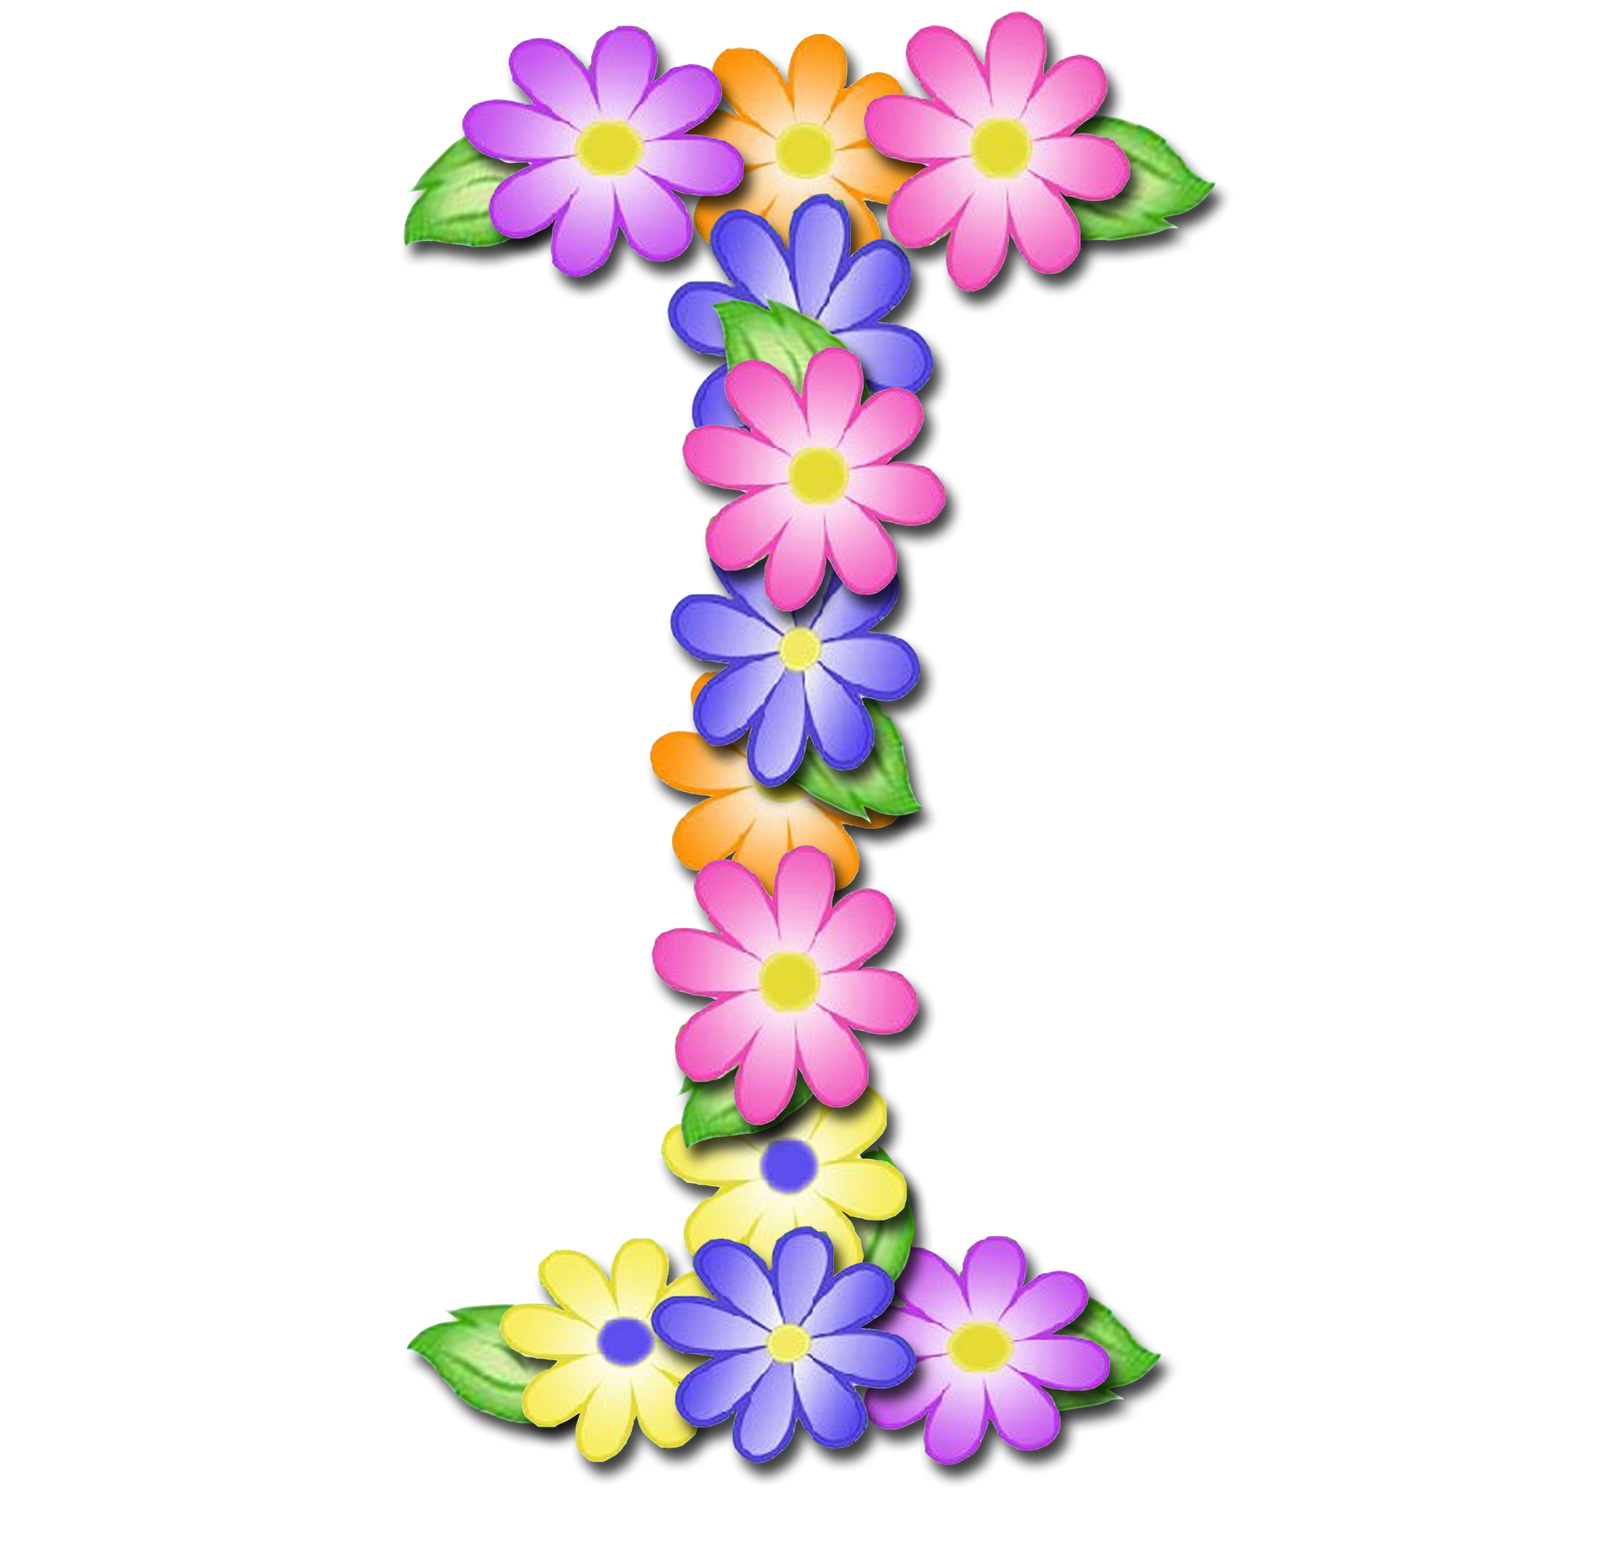 صور الحروف الإنجليزية بأجمل الزهور والورود بخلفية شفافة بنج png وجودة عالية للمصممين :: إبحث عن حروف إسمك بالإنجليزية I